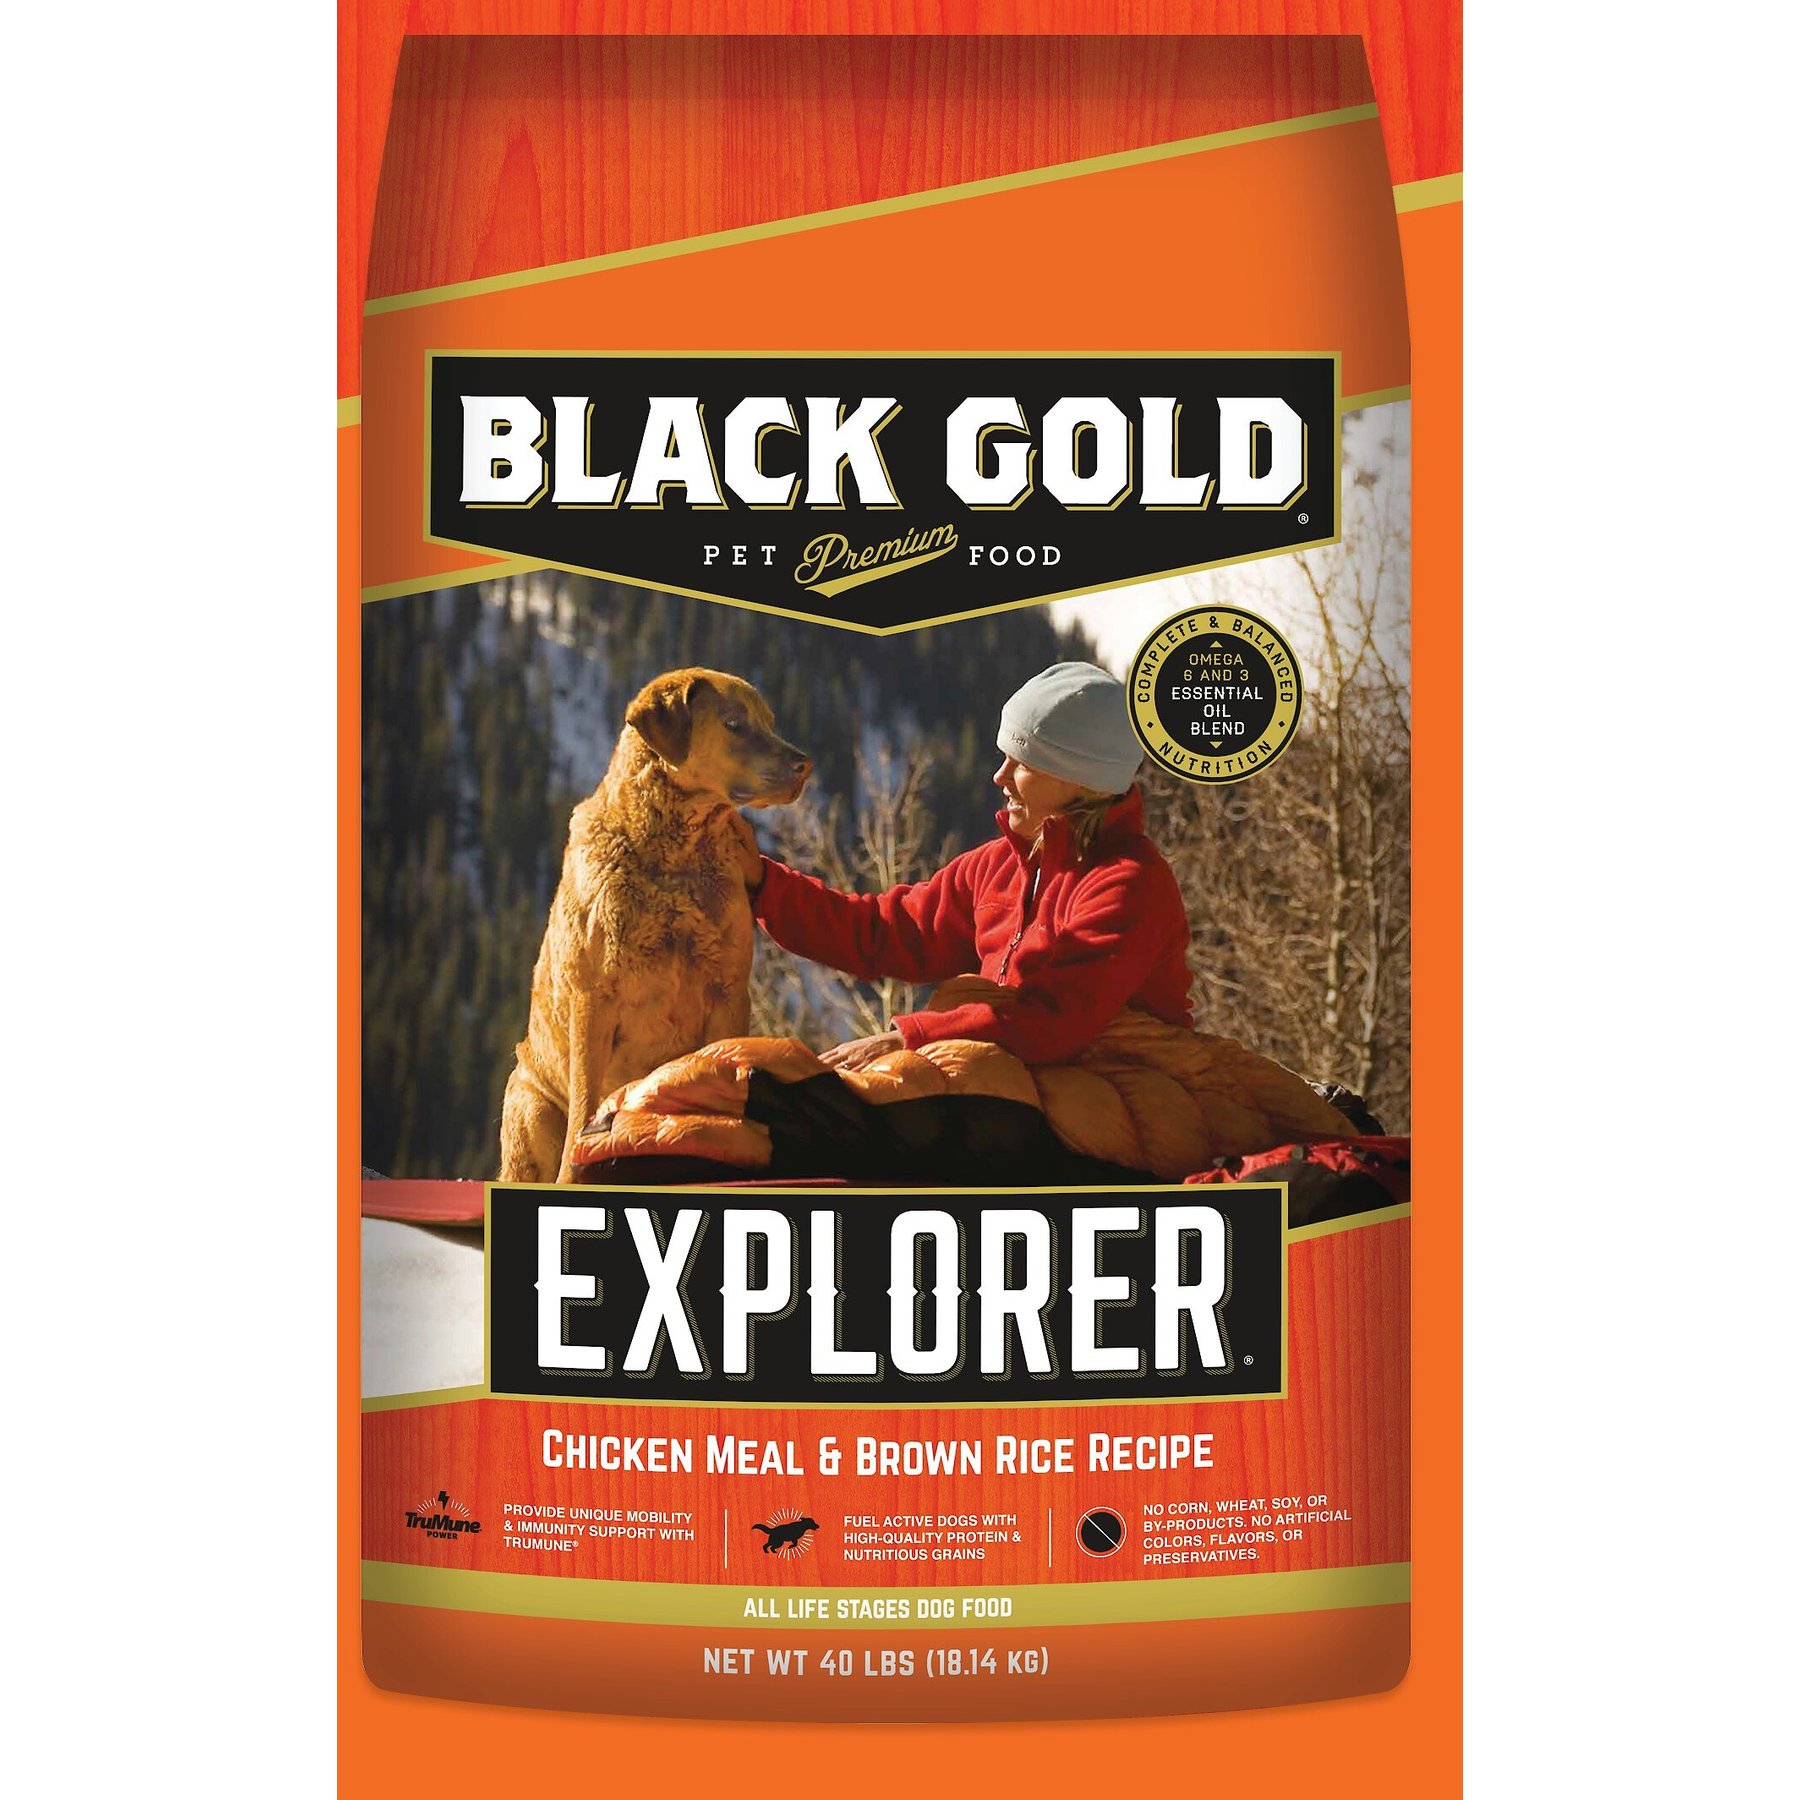 Black Gold Explorer - Premium Pet Food